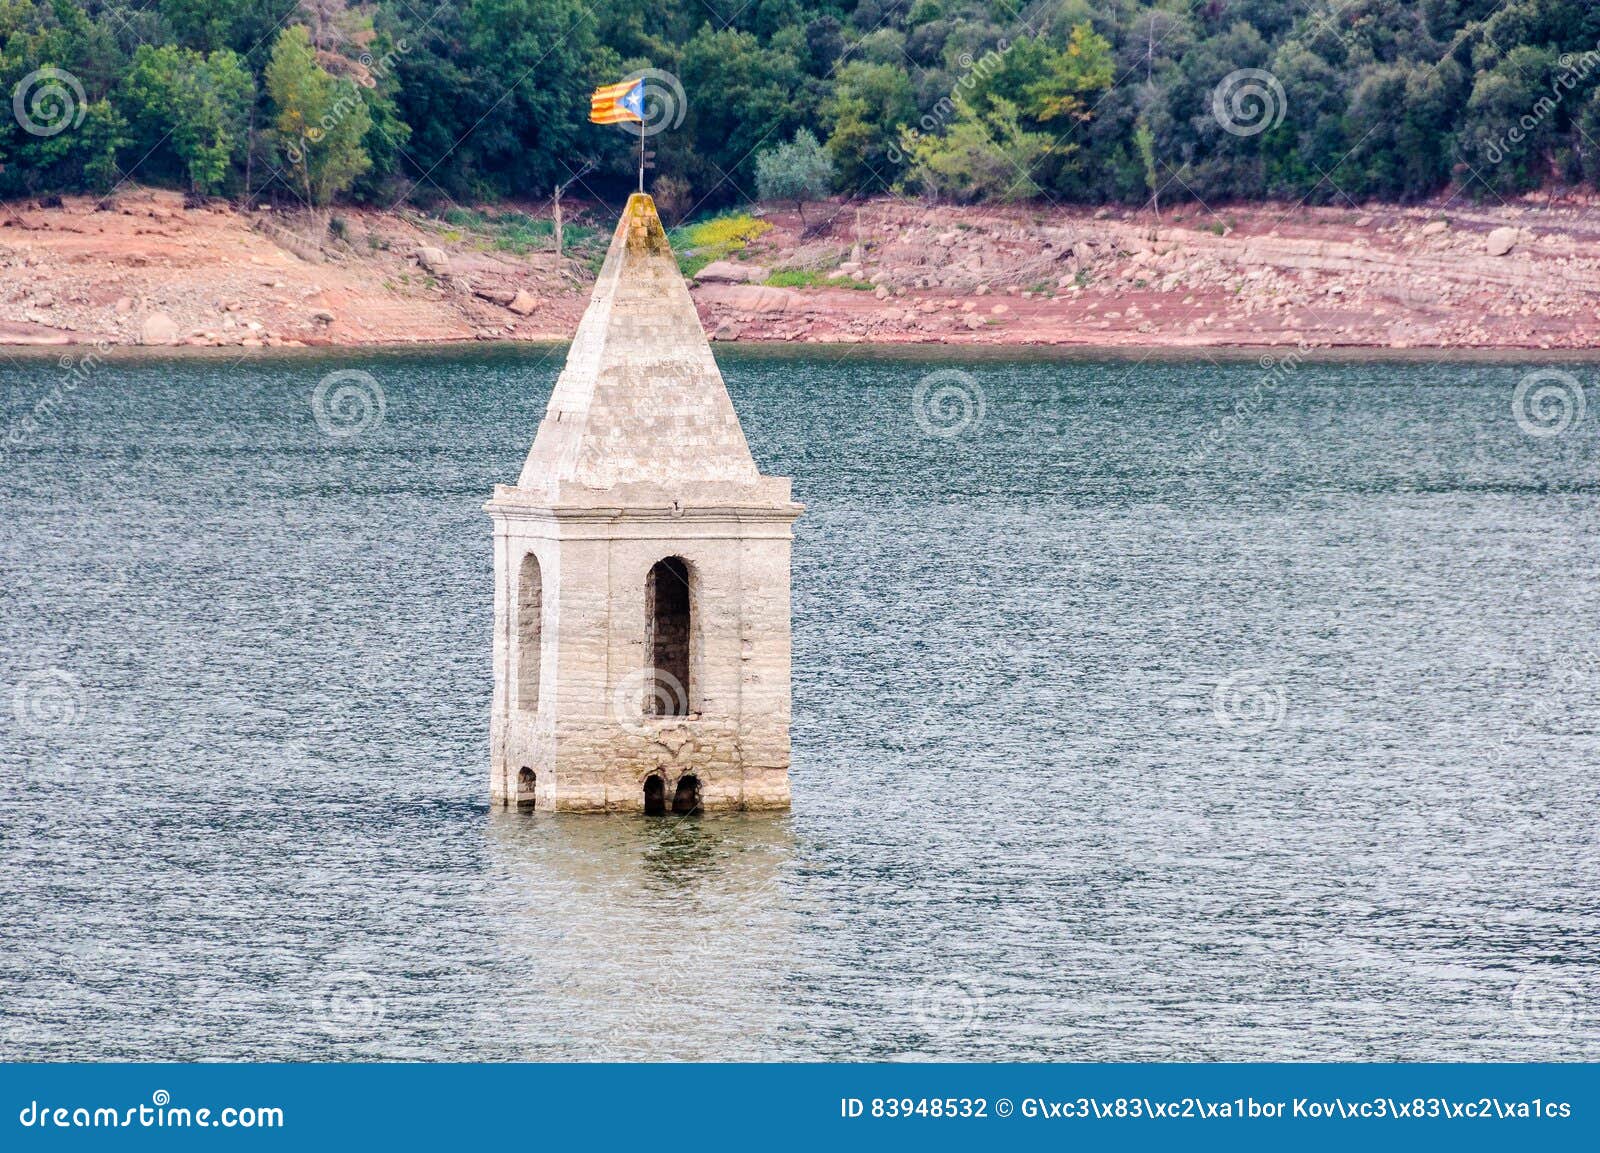 church tower in sau reservoir, catalonia, spain